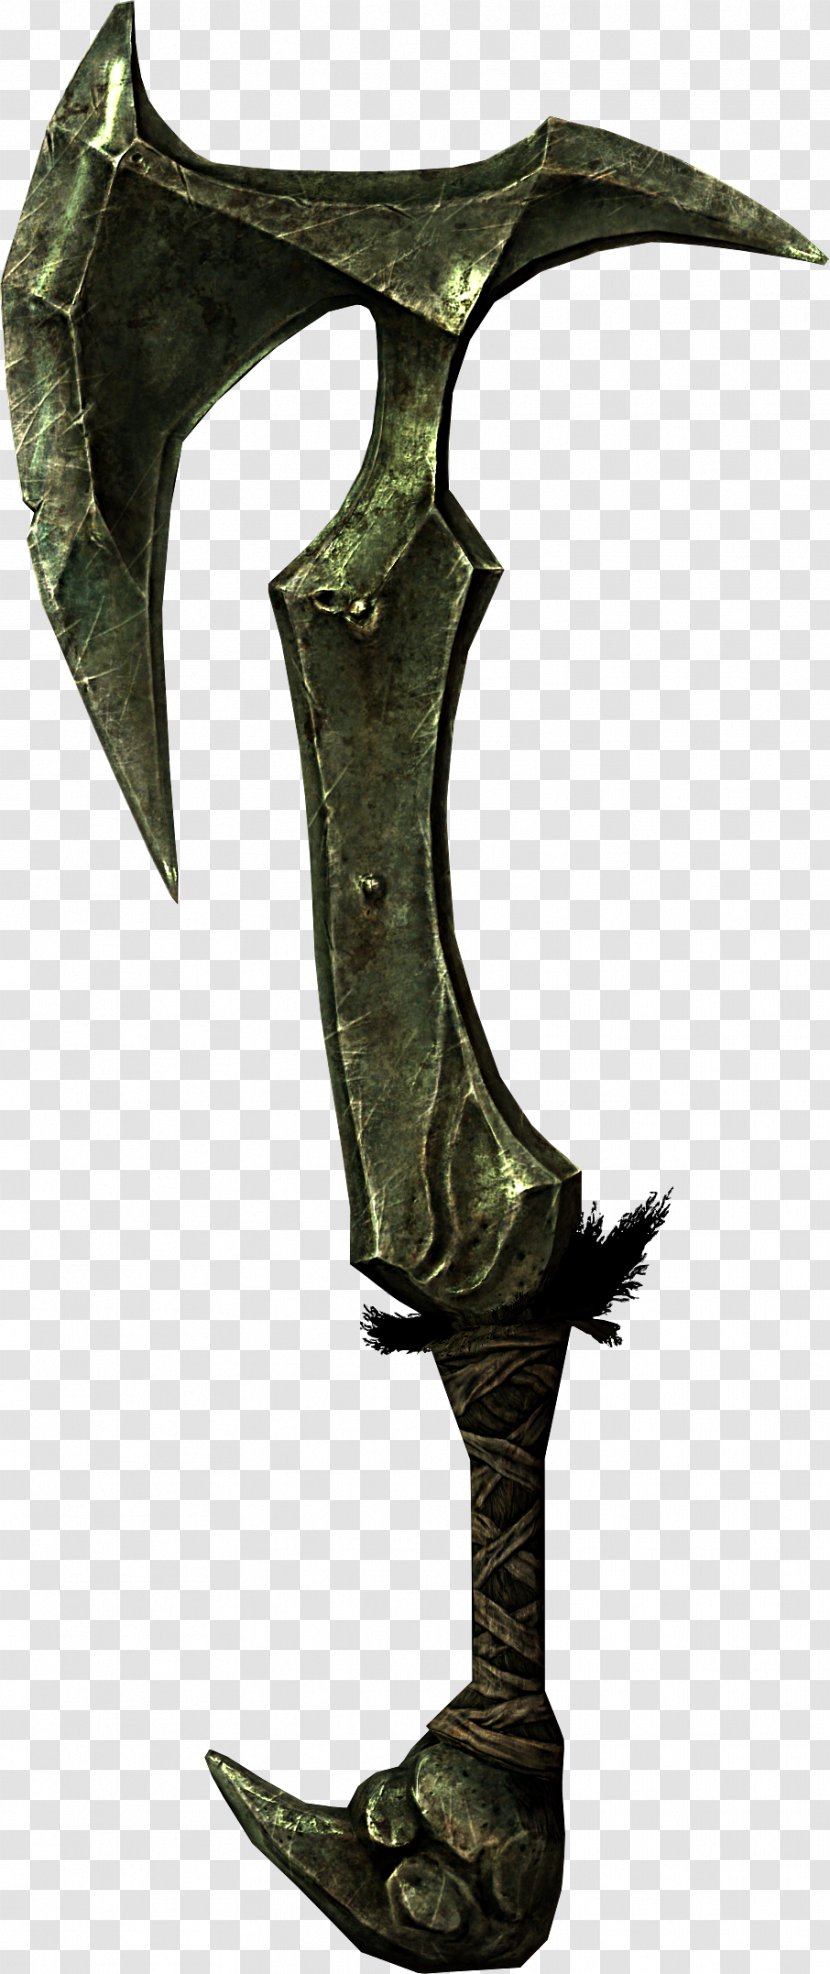 The Elder Scrolls V: Skyrim Weapon Knife Battle Axe Transparent PNG